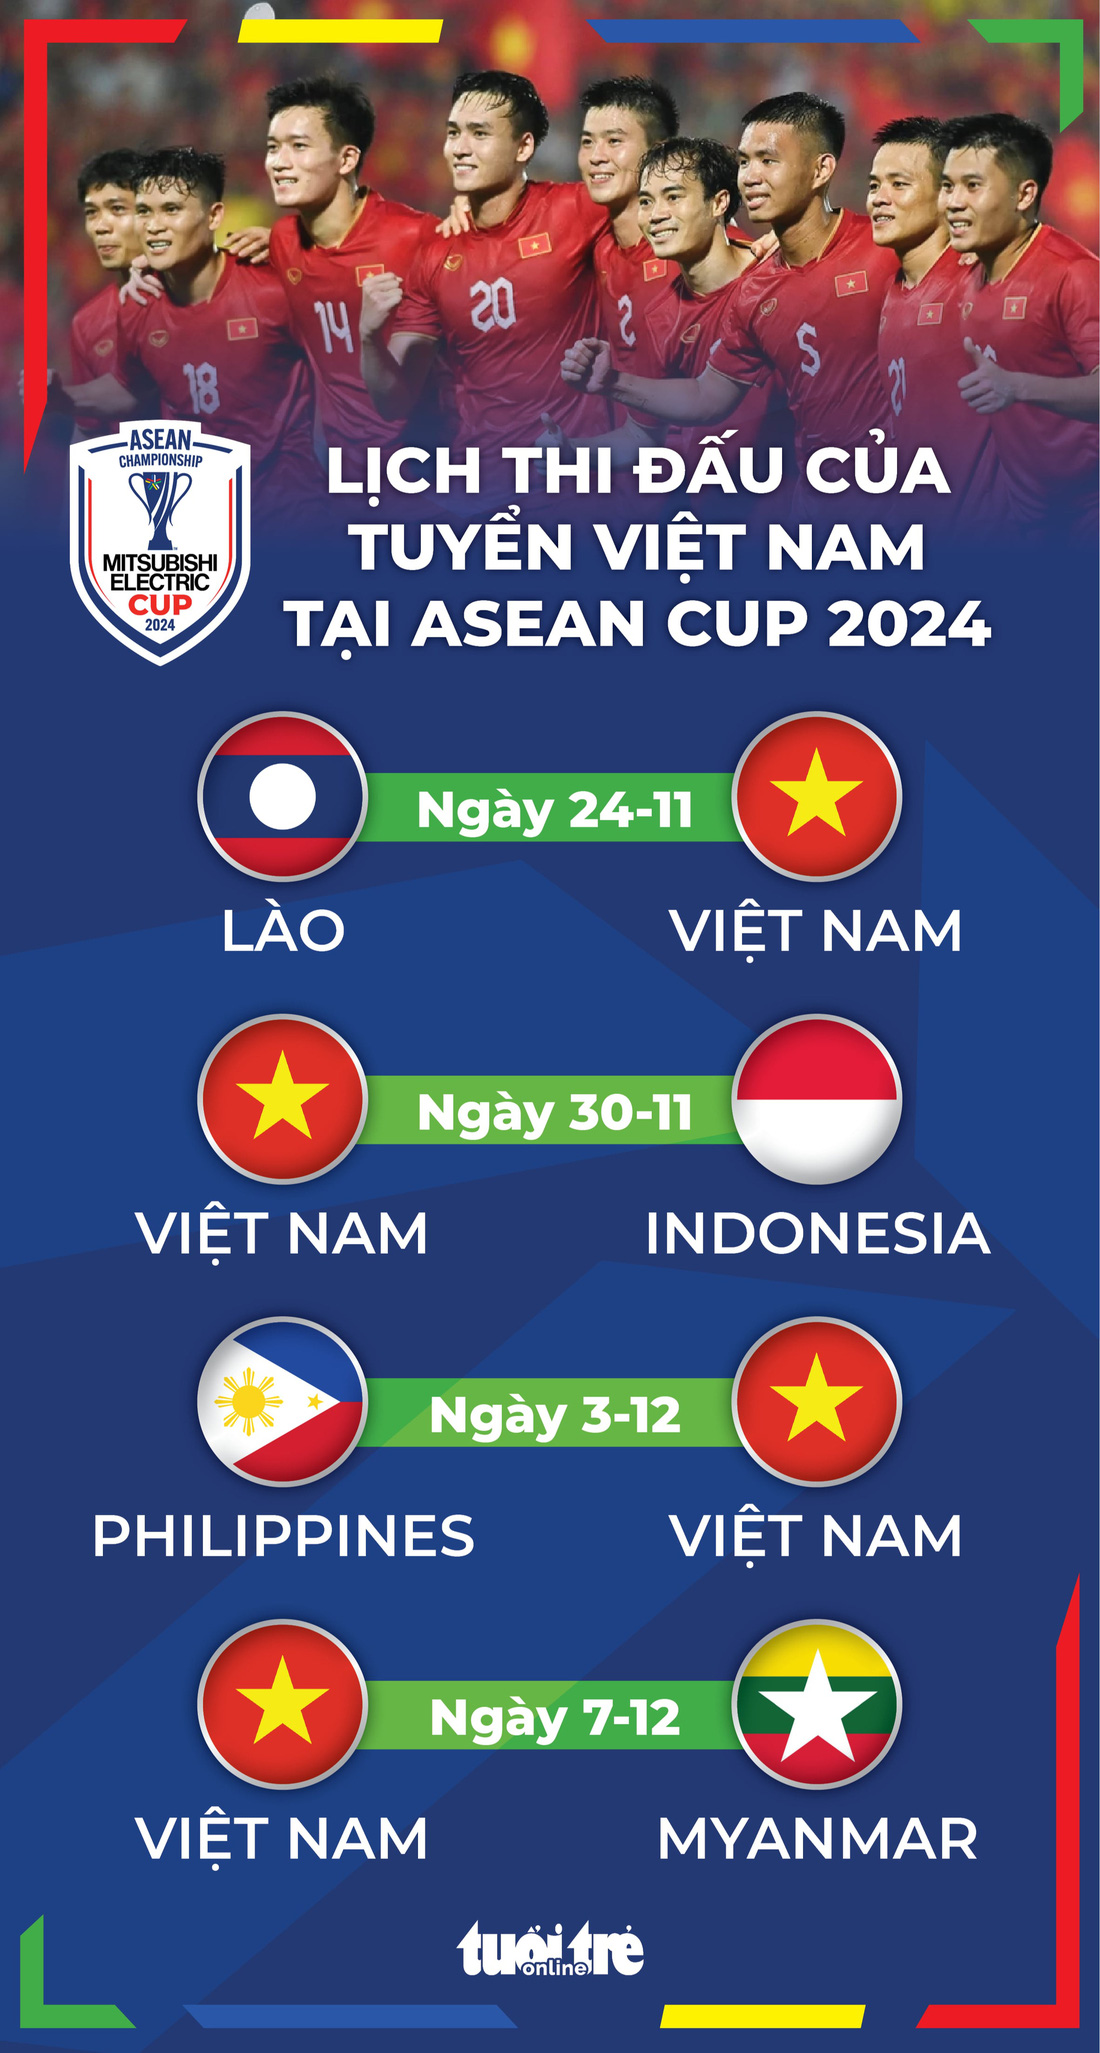 Lịch thi đấu của tuyển Việt Nam tại ASEAN Cup 2024 - Đồ họa: AN BÌNH